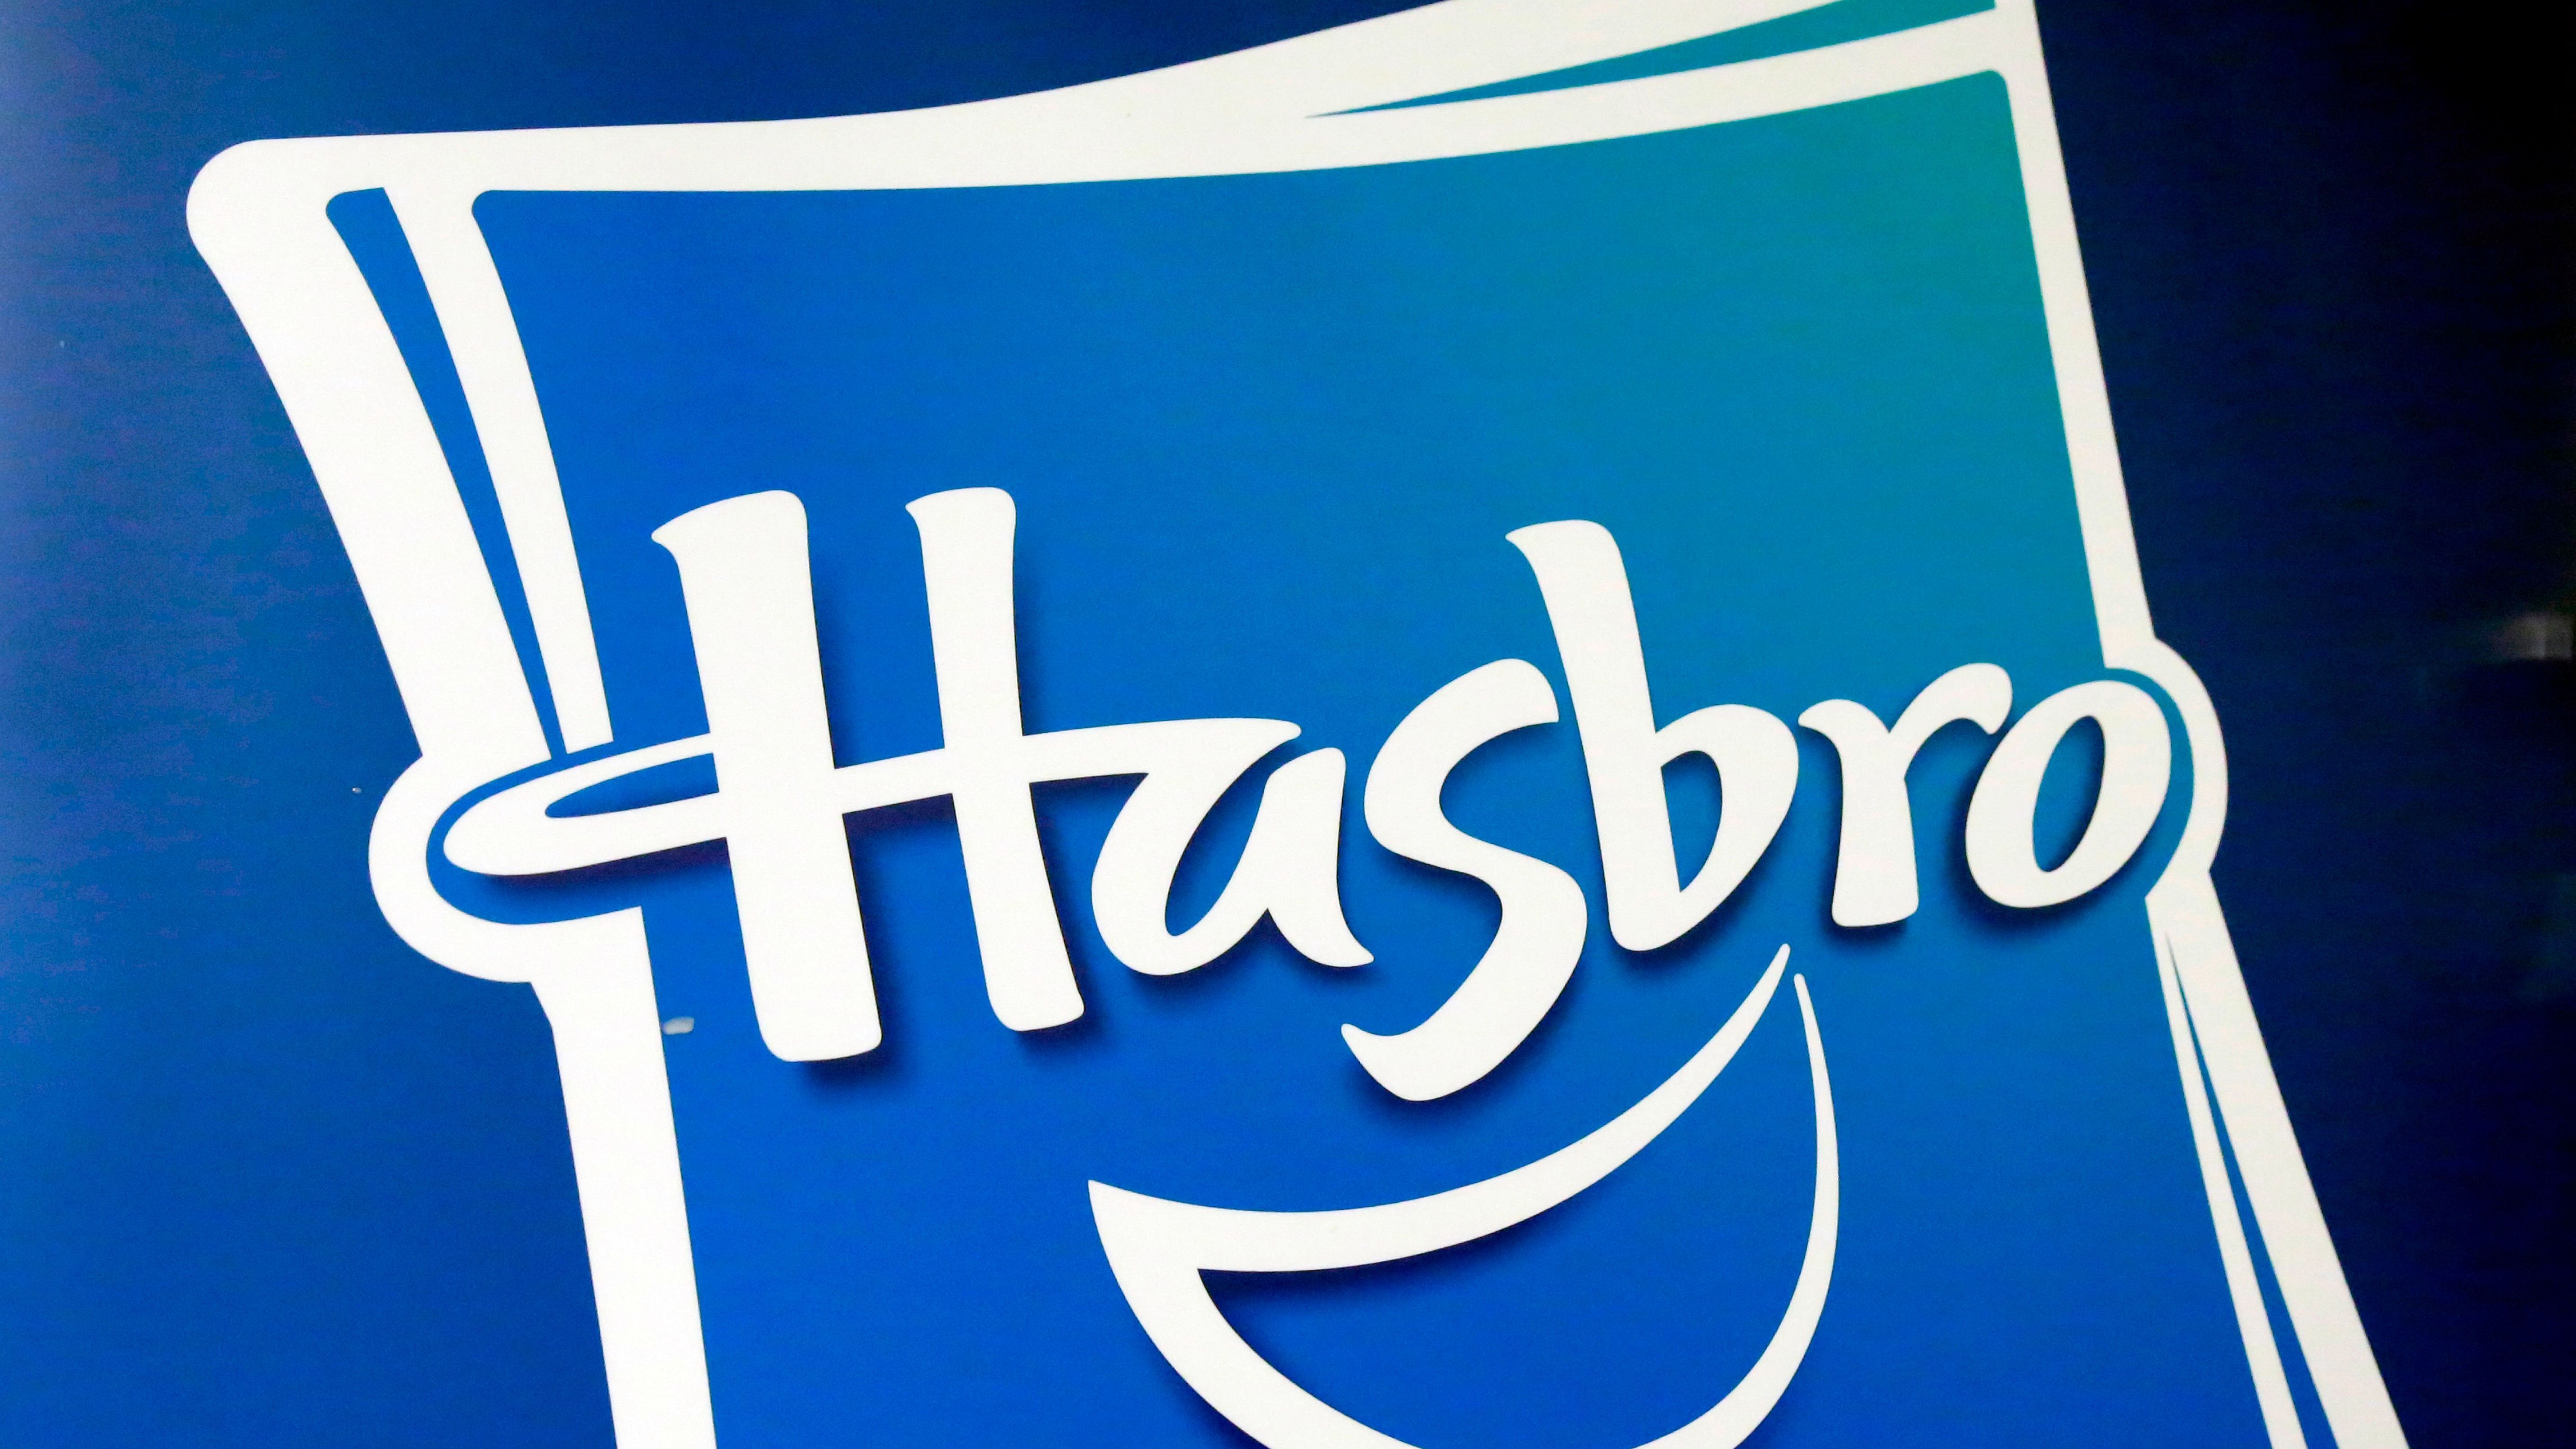 Der Spielzeug-Riese Hasbro kündigte einen Stellenabbau von 15 Prozent an. Das sind circa 1.000 Mitarbeiter:innen, von denen sich das Unternehmen in nächster Zeit trennen wird. 